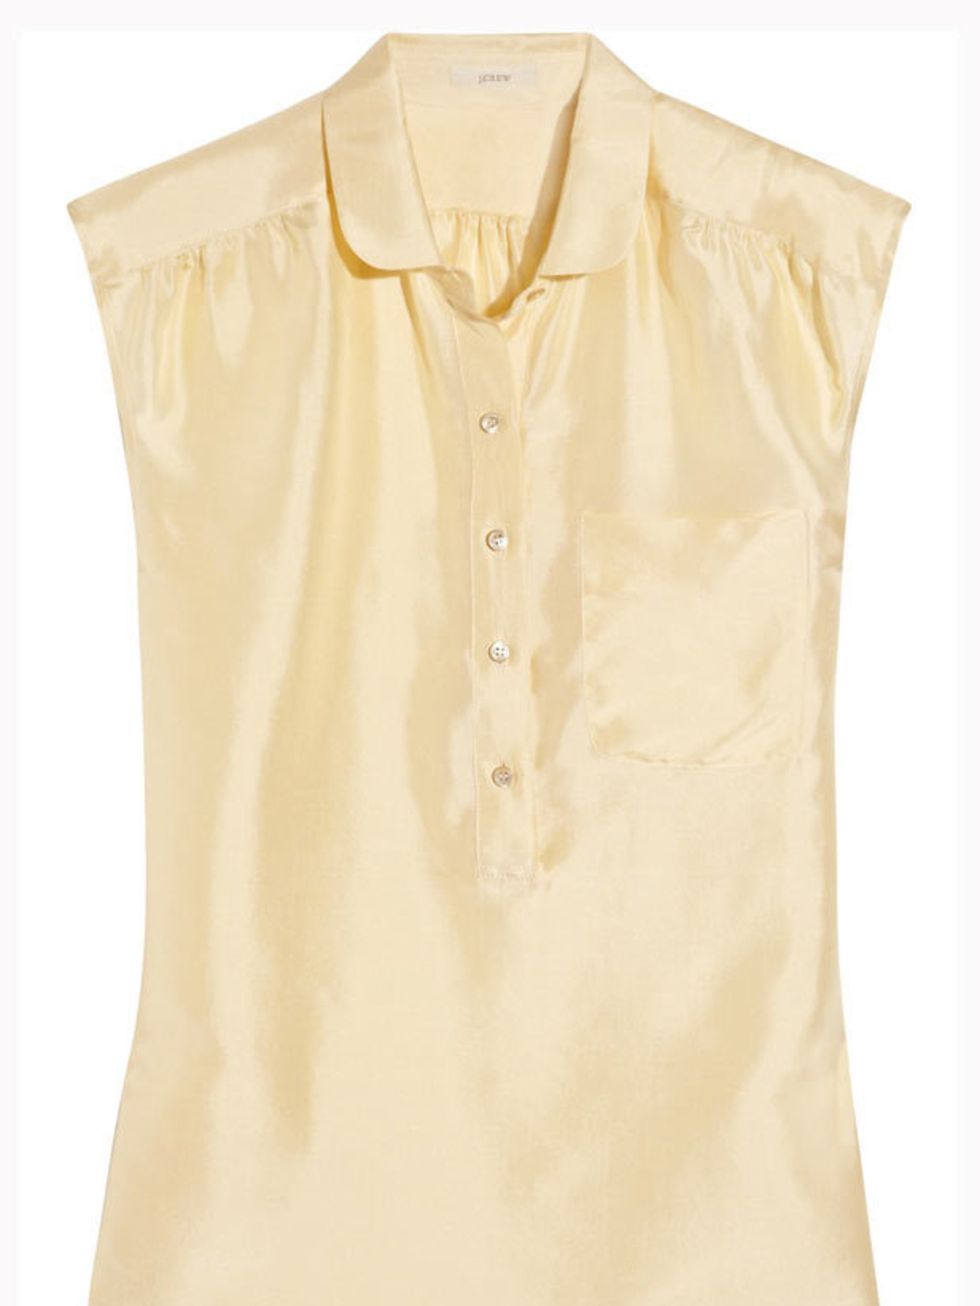 <p>J.Crew silk-taffeta blouse, £70, at <a href="http://www.net-a-porter.com/product/112649">Net-a-Porter</a></p>